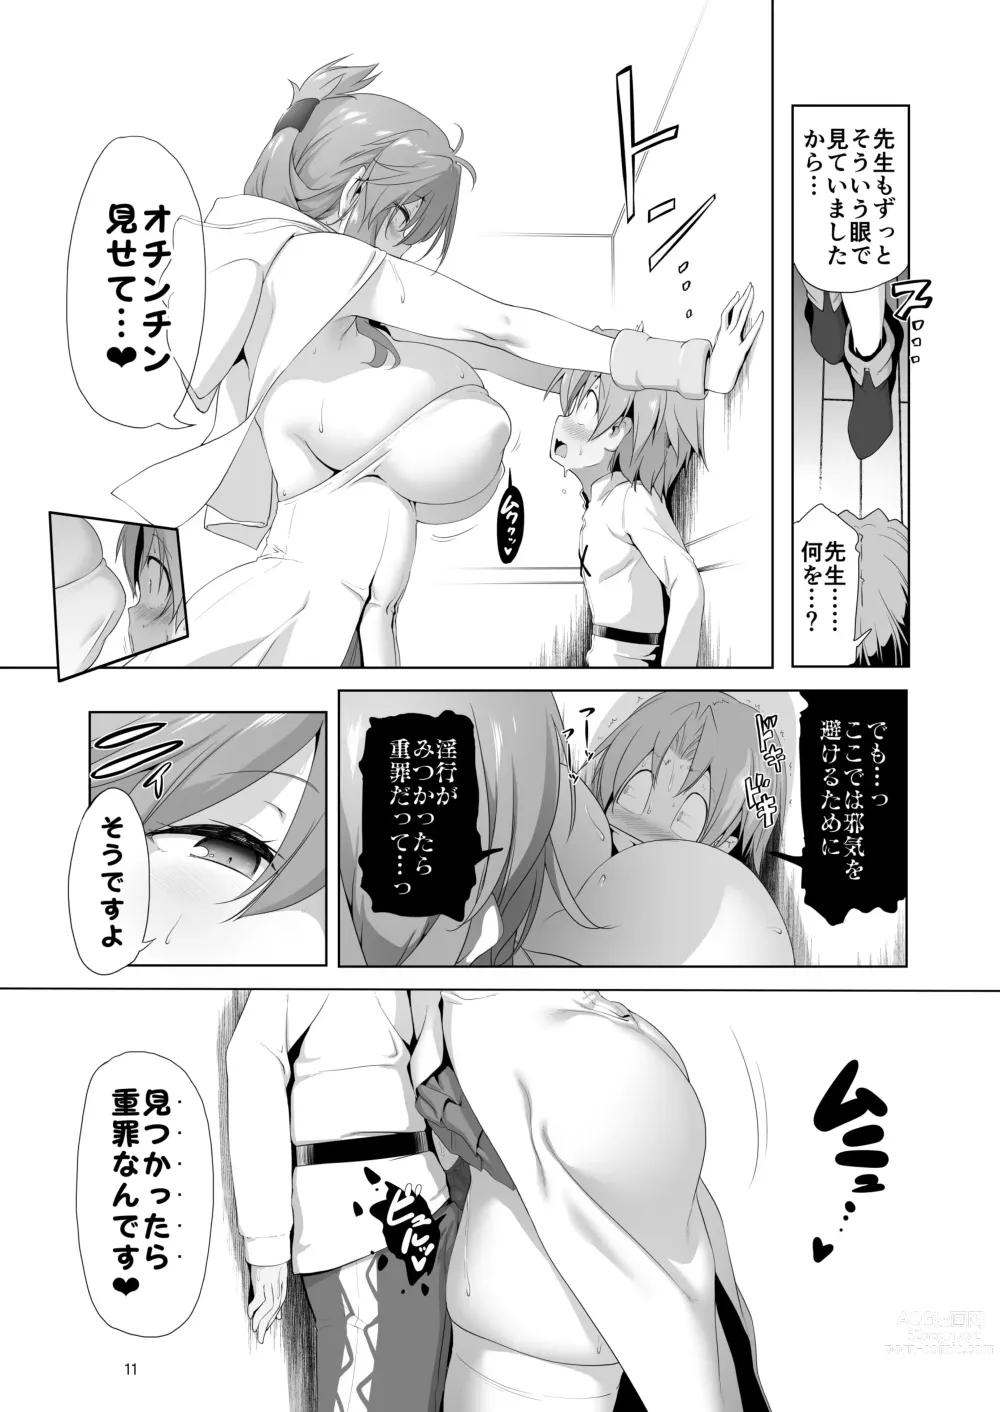 Page 11 of doujinshi Makotoni Zannen desu ga Bouken no Sho 9 wa Kiete Shimaimashita.